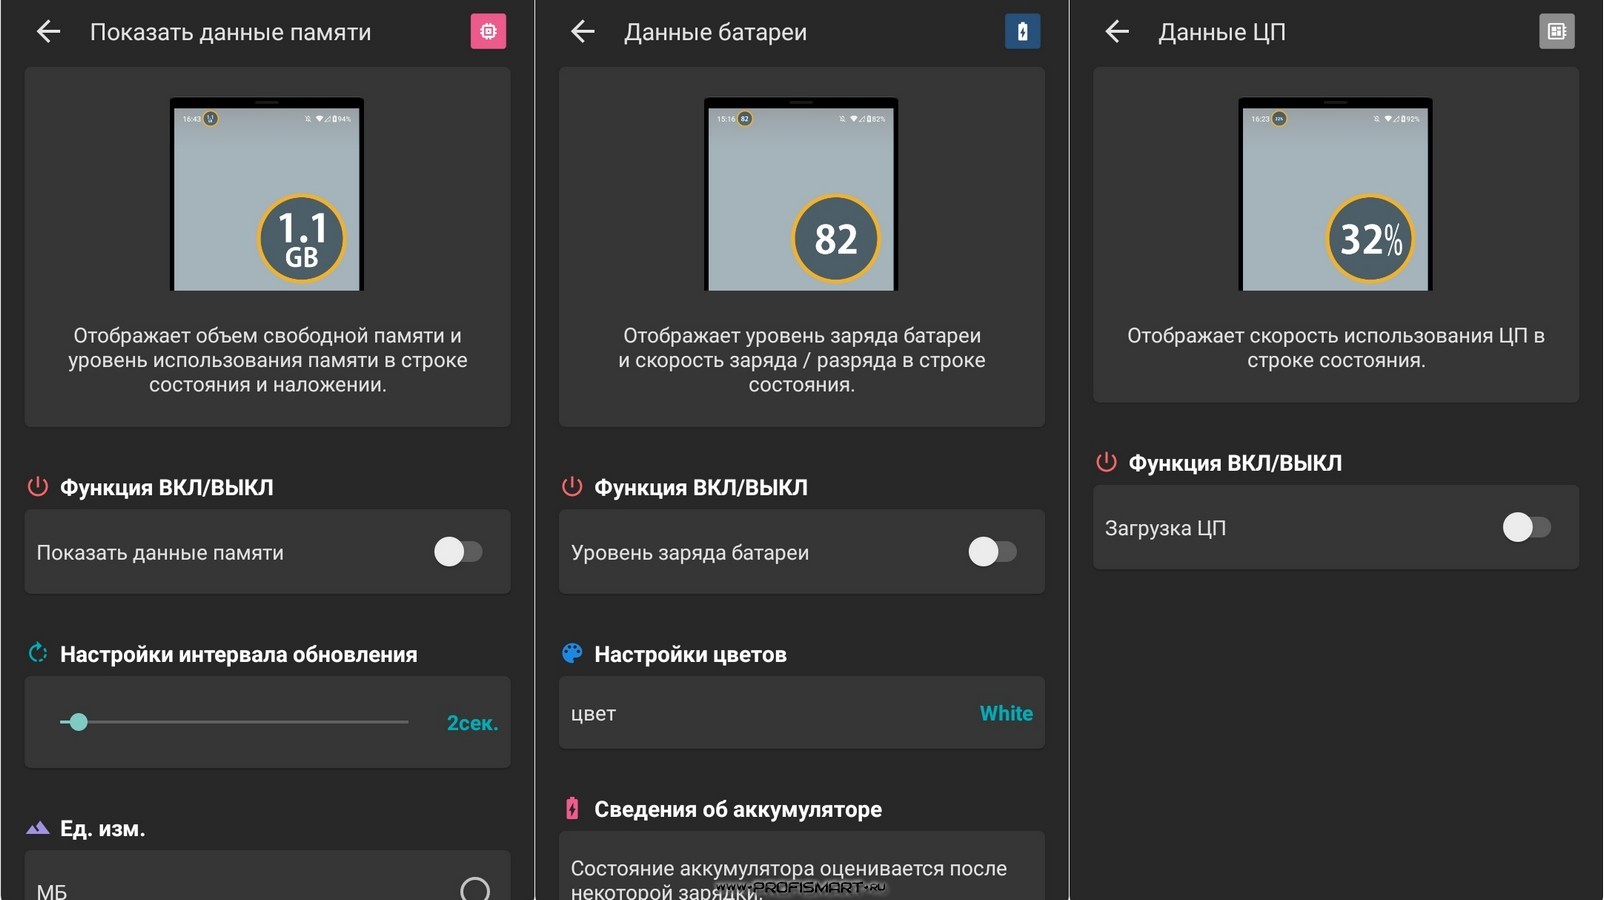 Скачать телеграмм бесплатно на андроид на русском и установить полную версию приложение на андроид фото 63